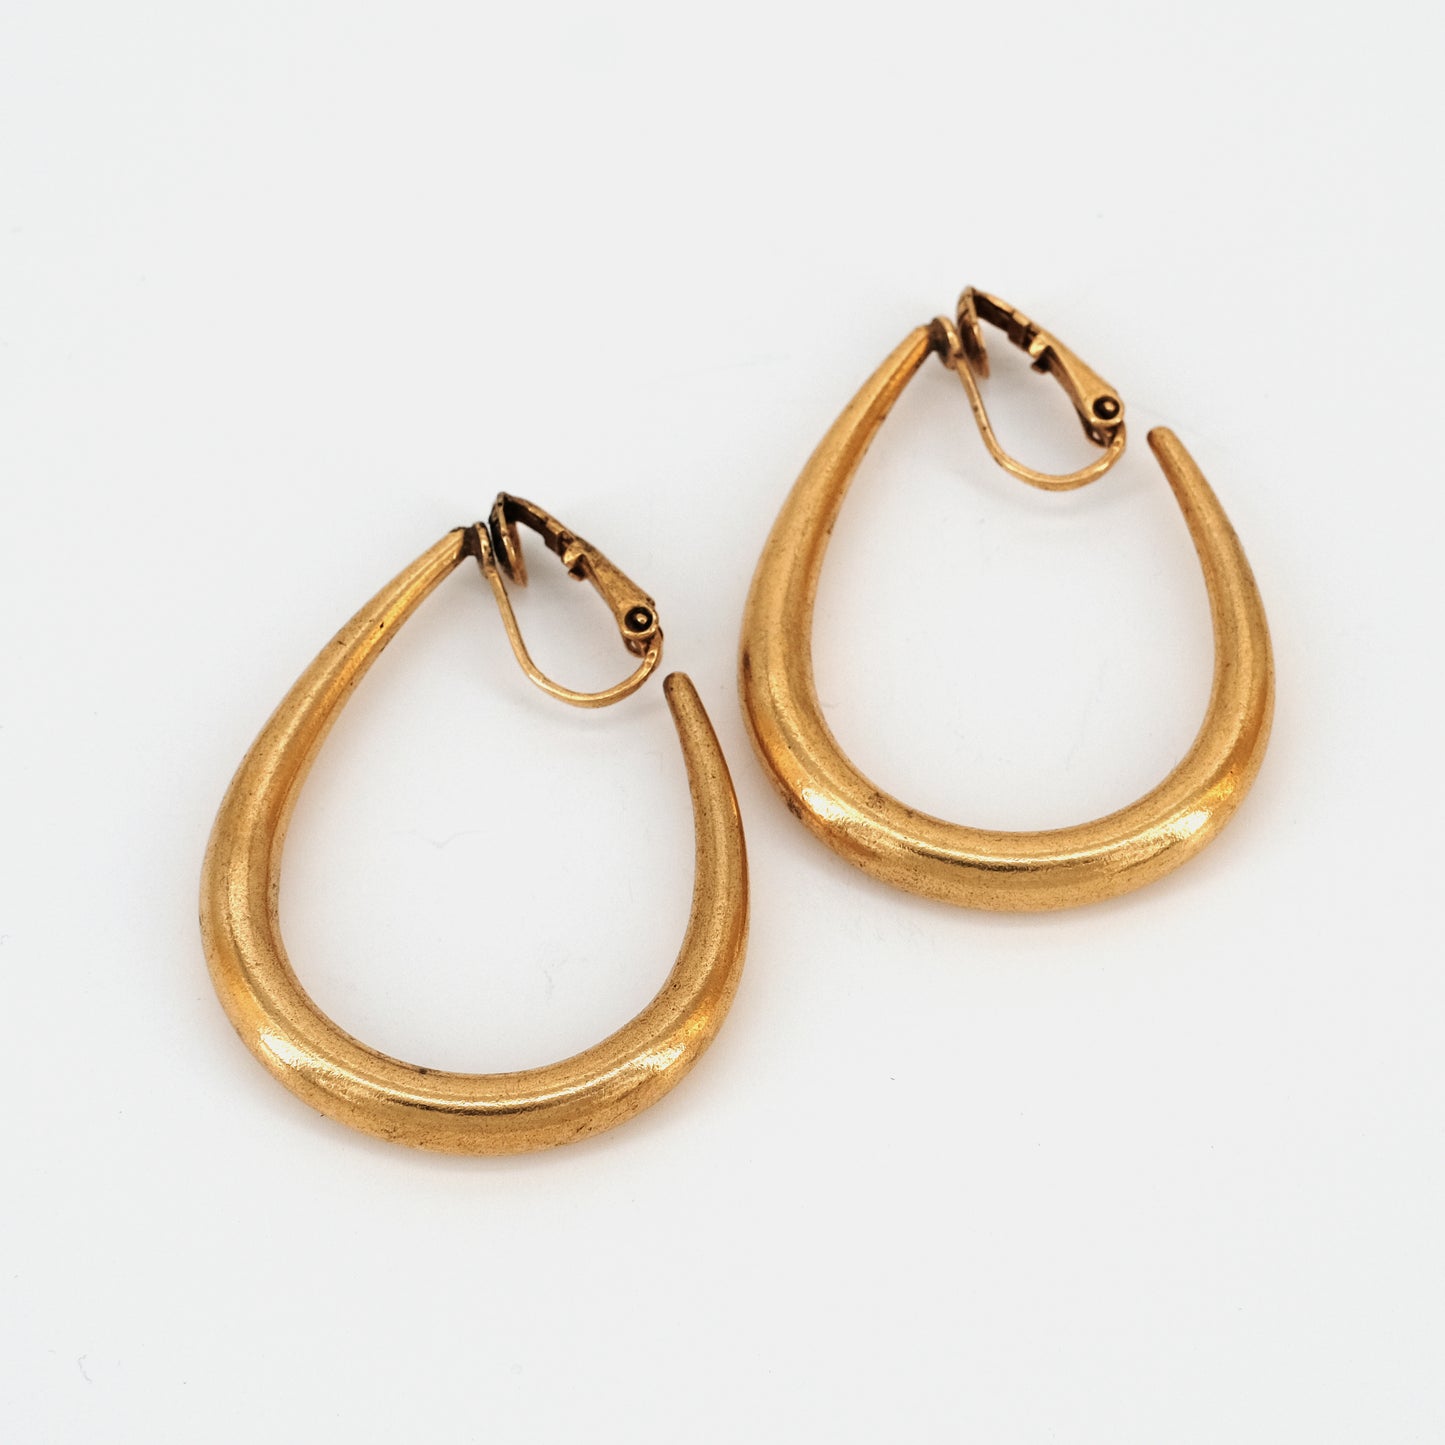 "Anna" earrings